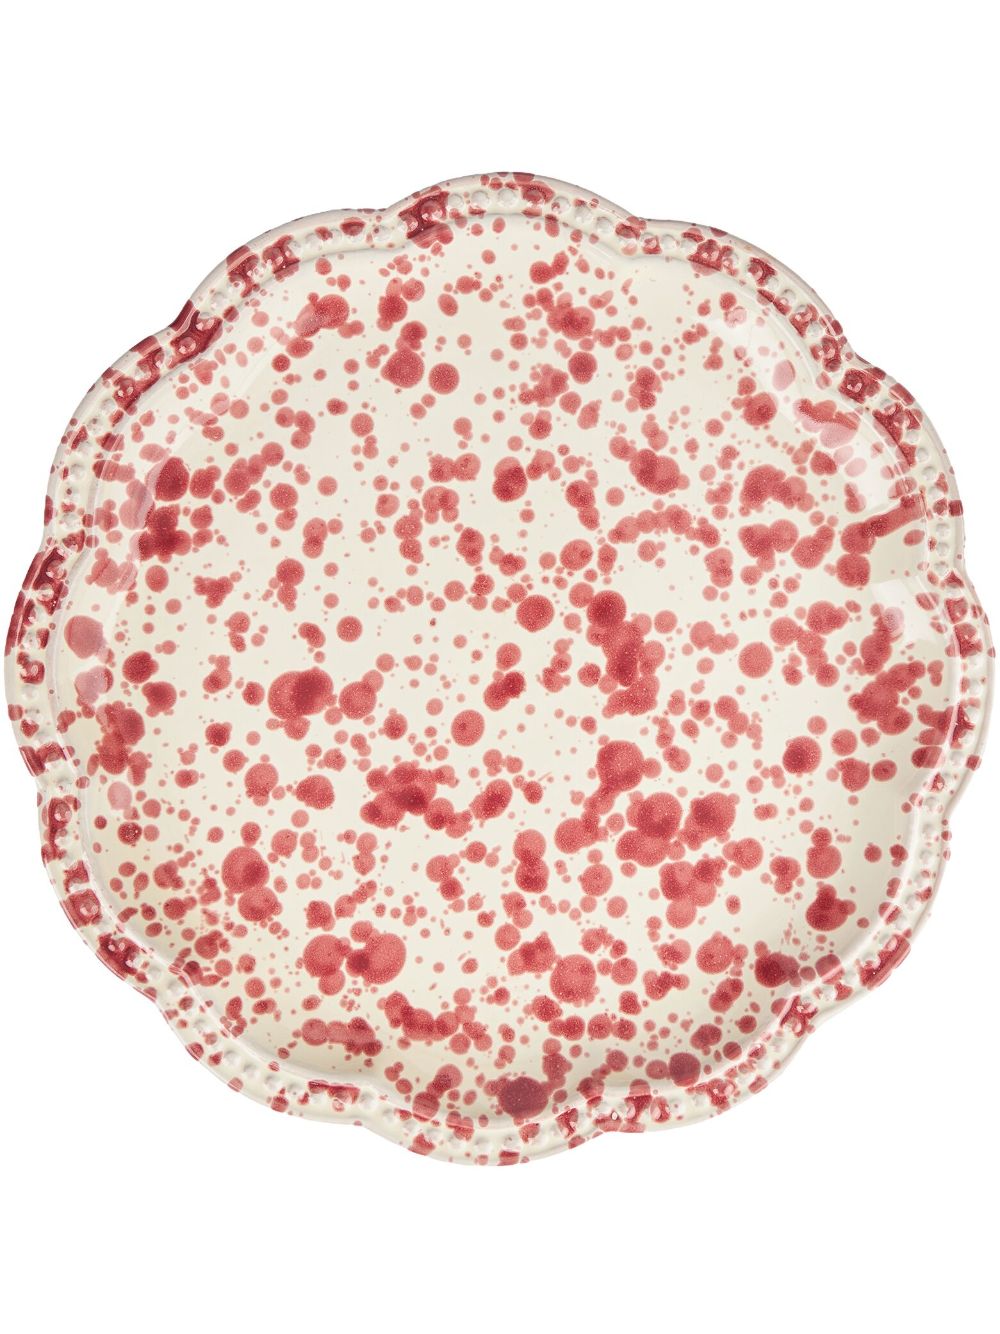 cabana assiette en céramique mouchetée (27 cm) - rouge